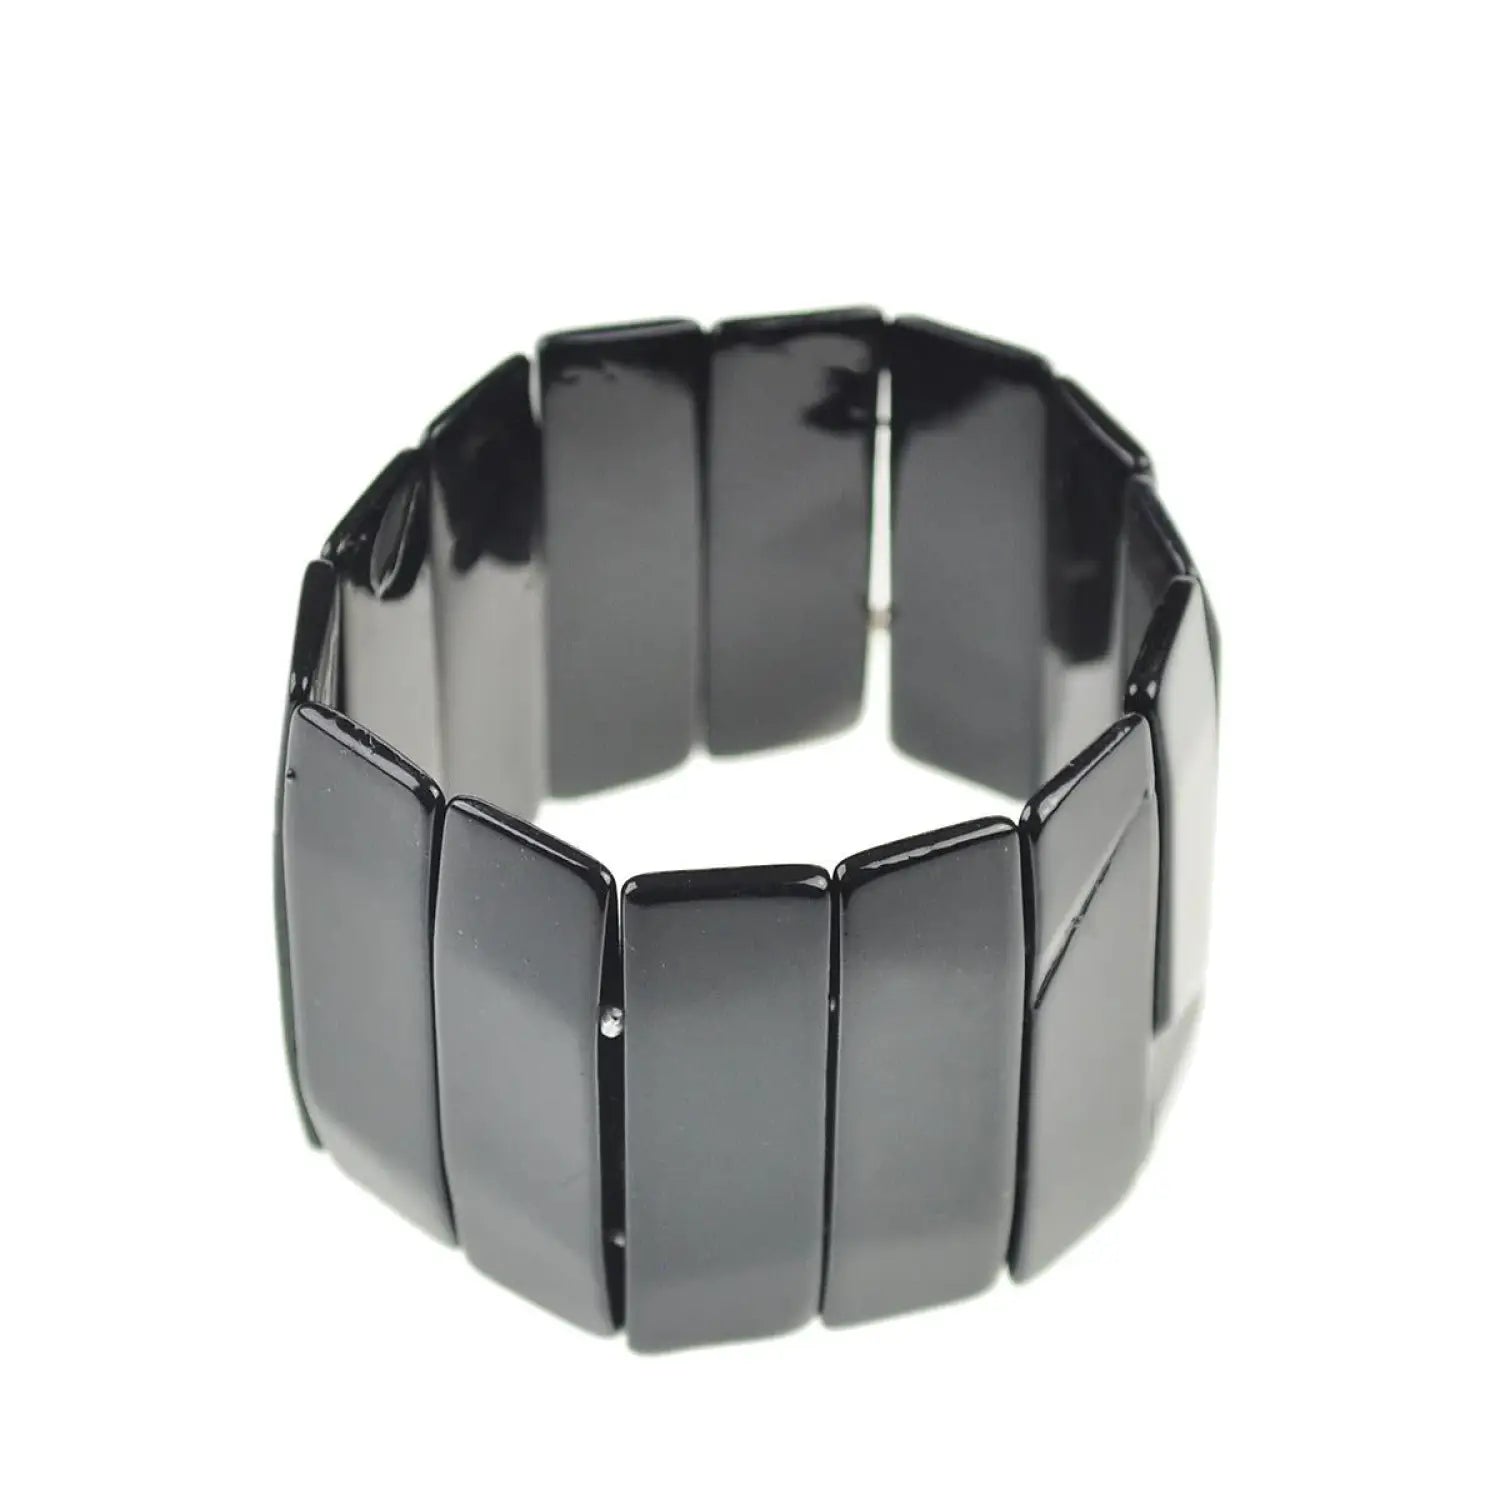 Adjustable shell bar stretch bracelet with square design